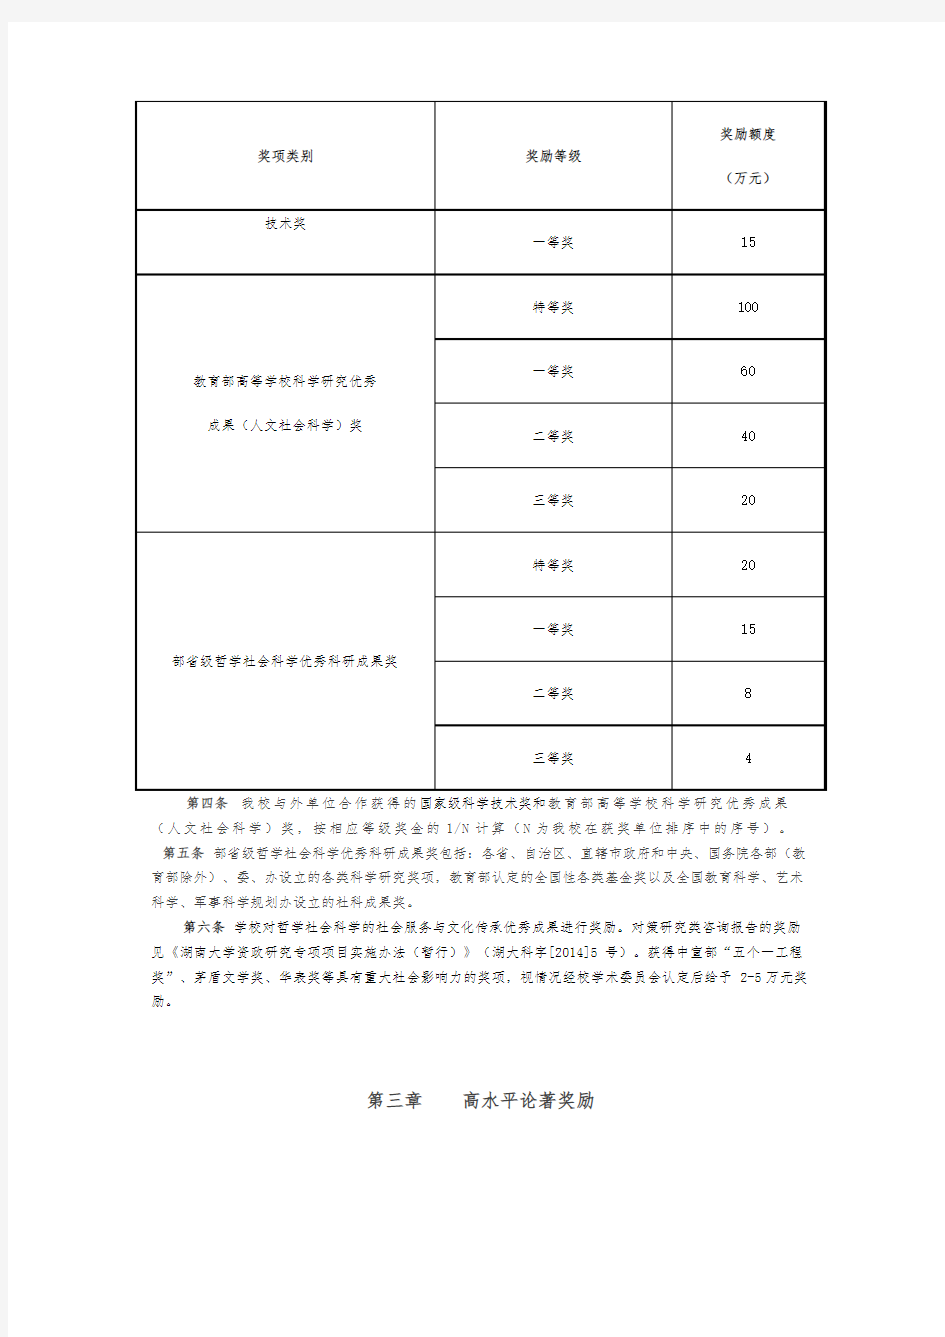 湖南大学科研成果奖励办法(2016年).